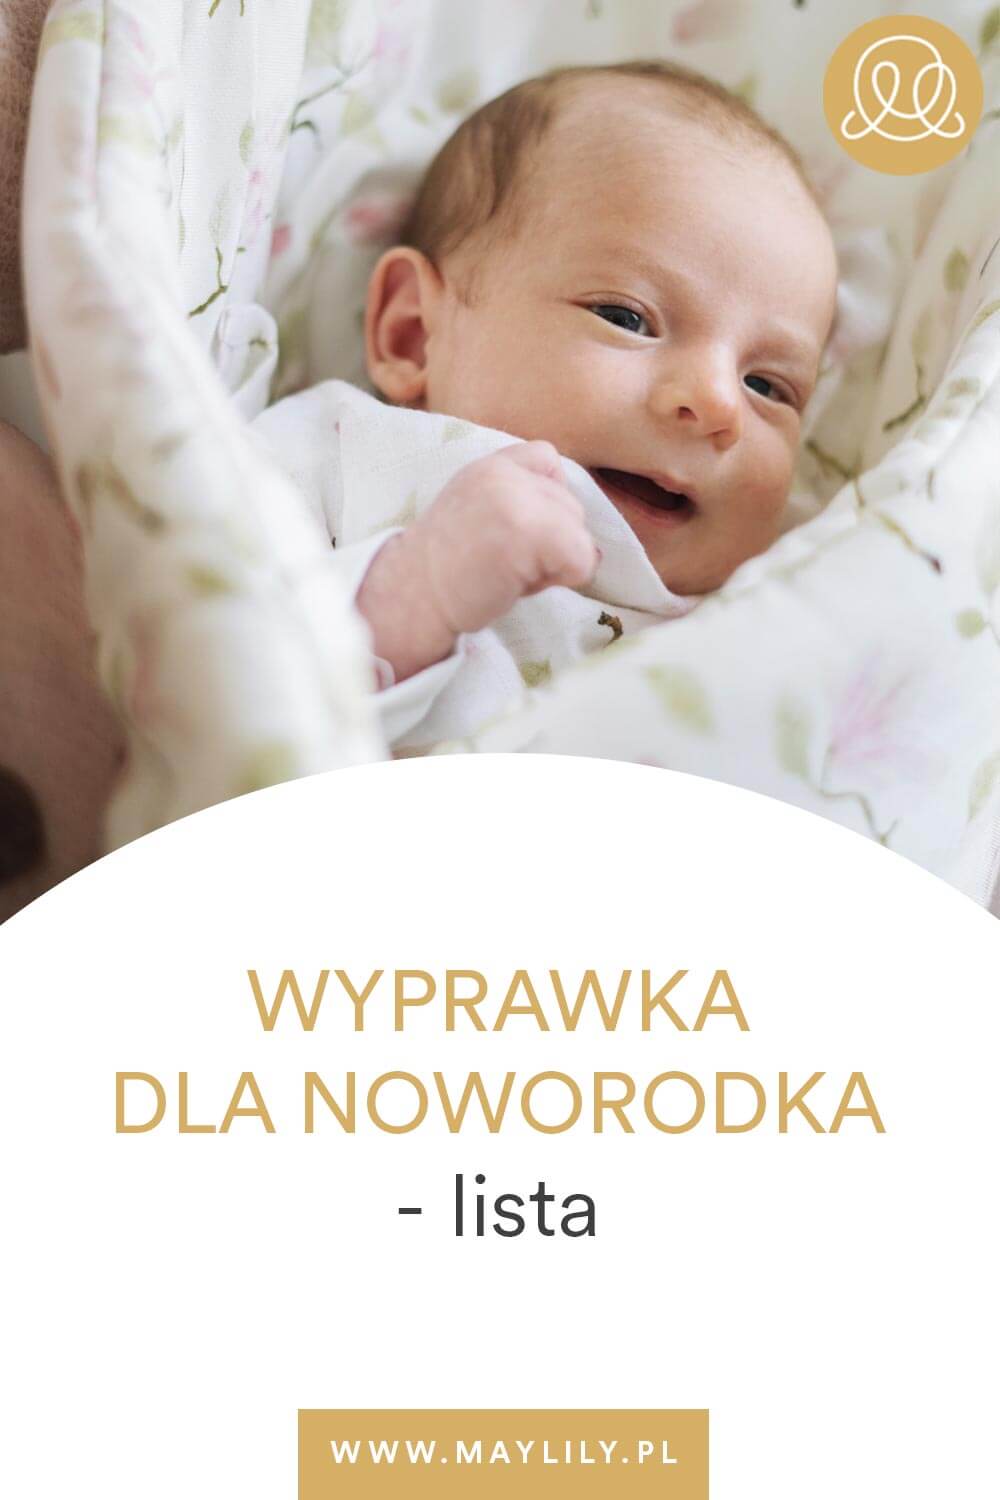 lista rzeczy dla noworodka #wyprawka #noworodek #dziecko #lista